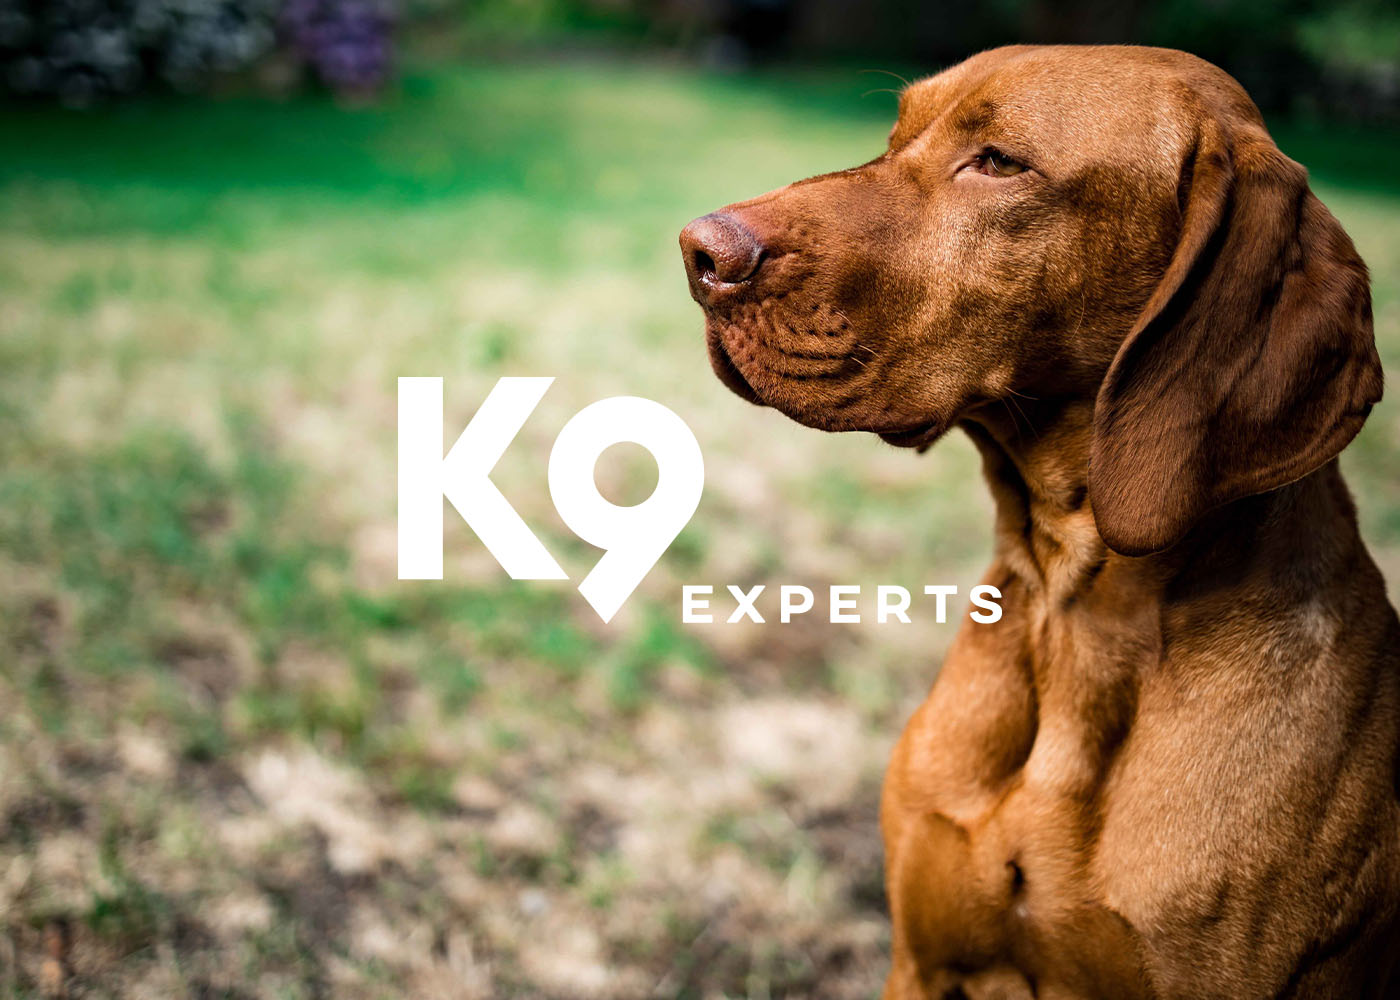 k9-experts-kachel-5